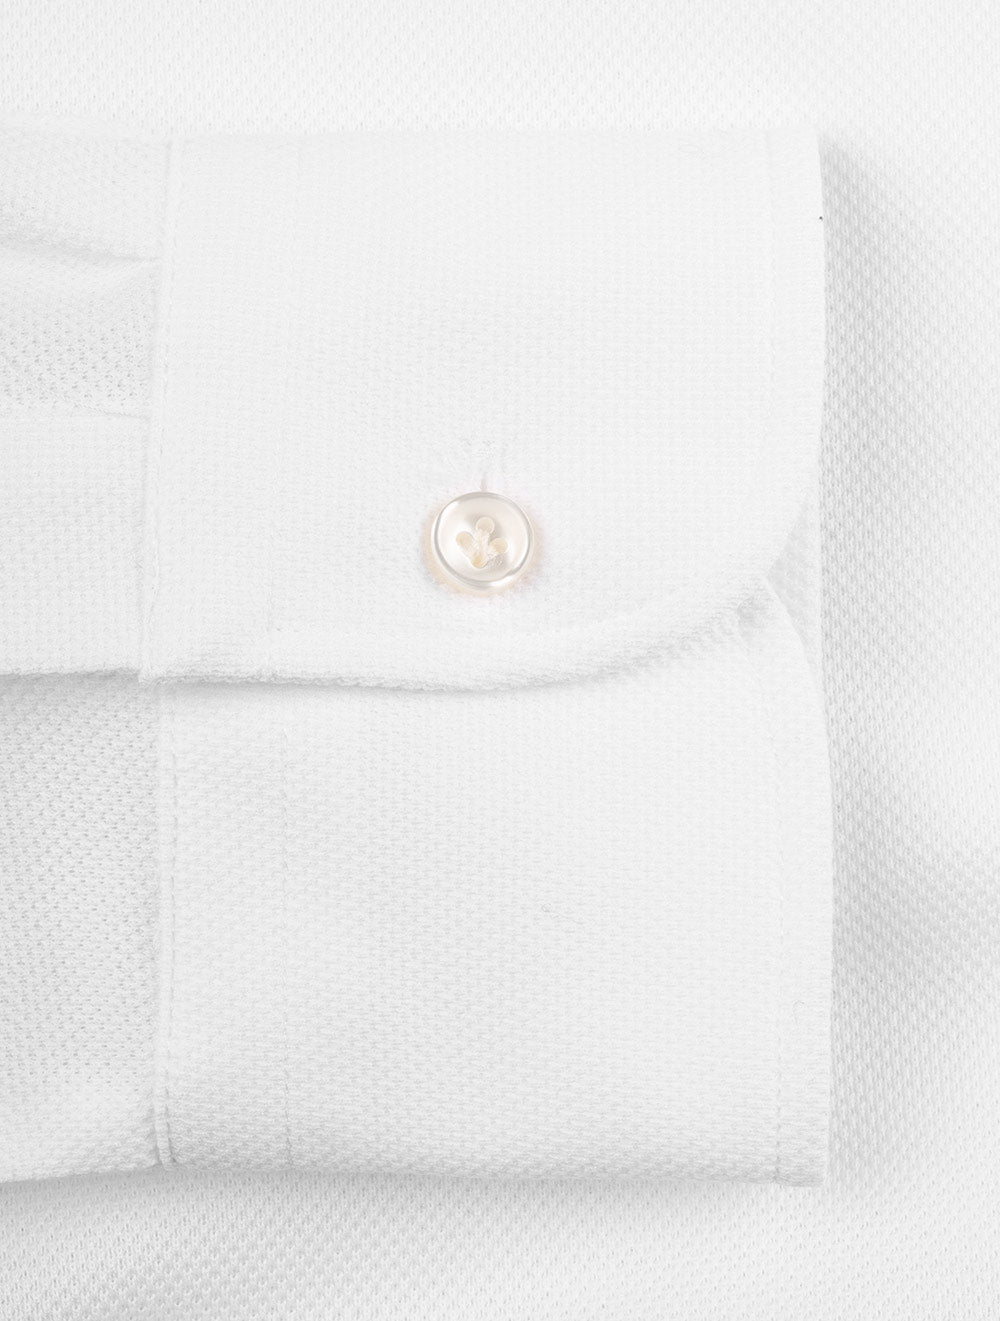 Long Sleeve Polo Shirt White